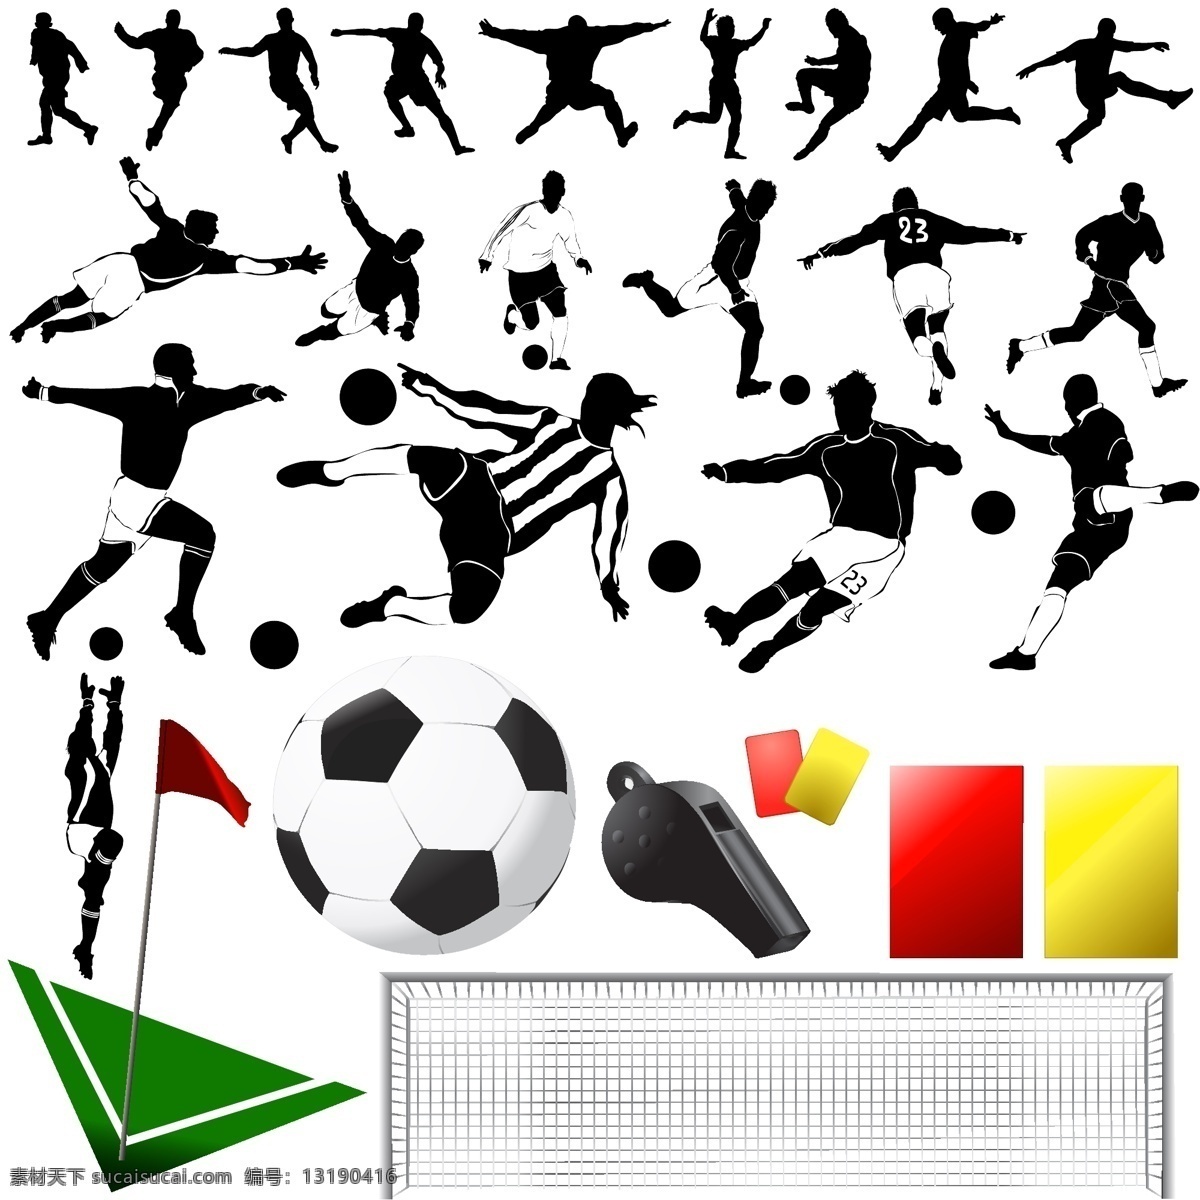 足球 运动 主题 剪影 龙门 矢量素材 体育运动 运动员 足球运动 哨子 足球场一角 红牌 黄牌 矢量图 其他矢量图